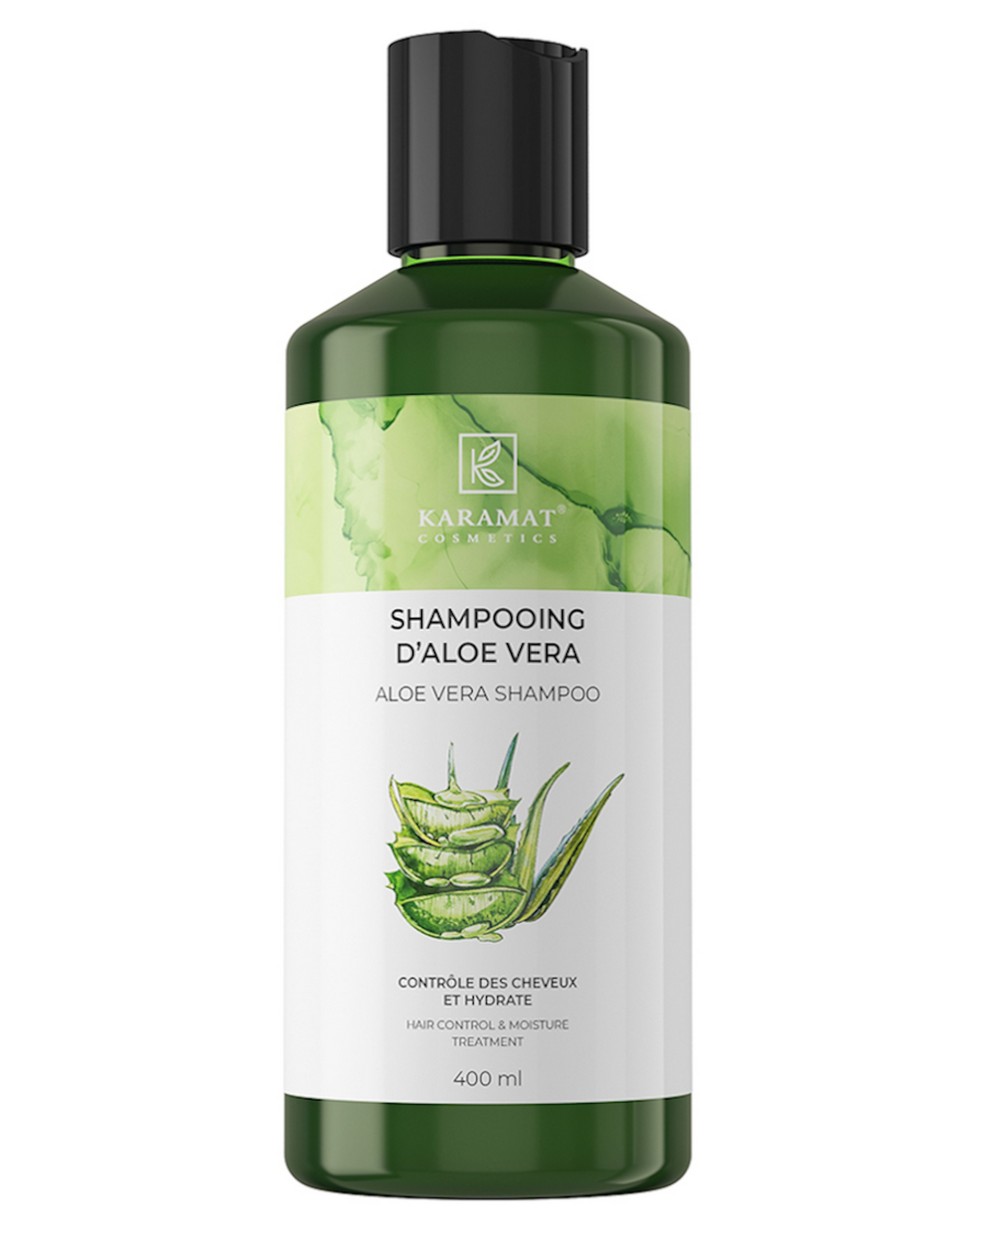 Karamat Aloe Vera Shampoo